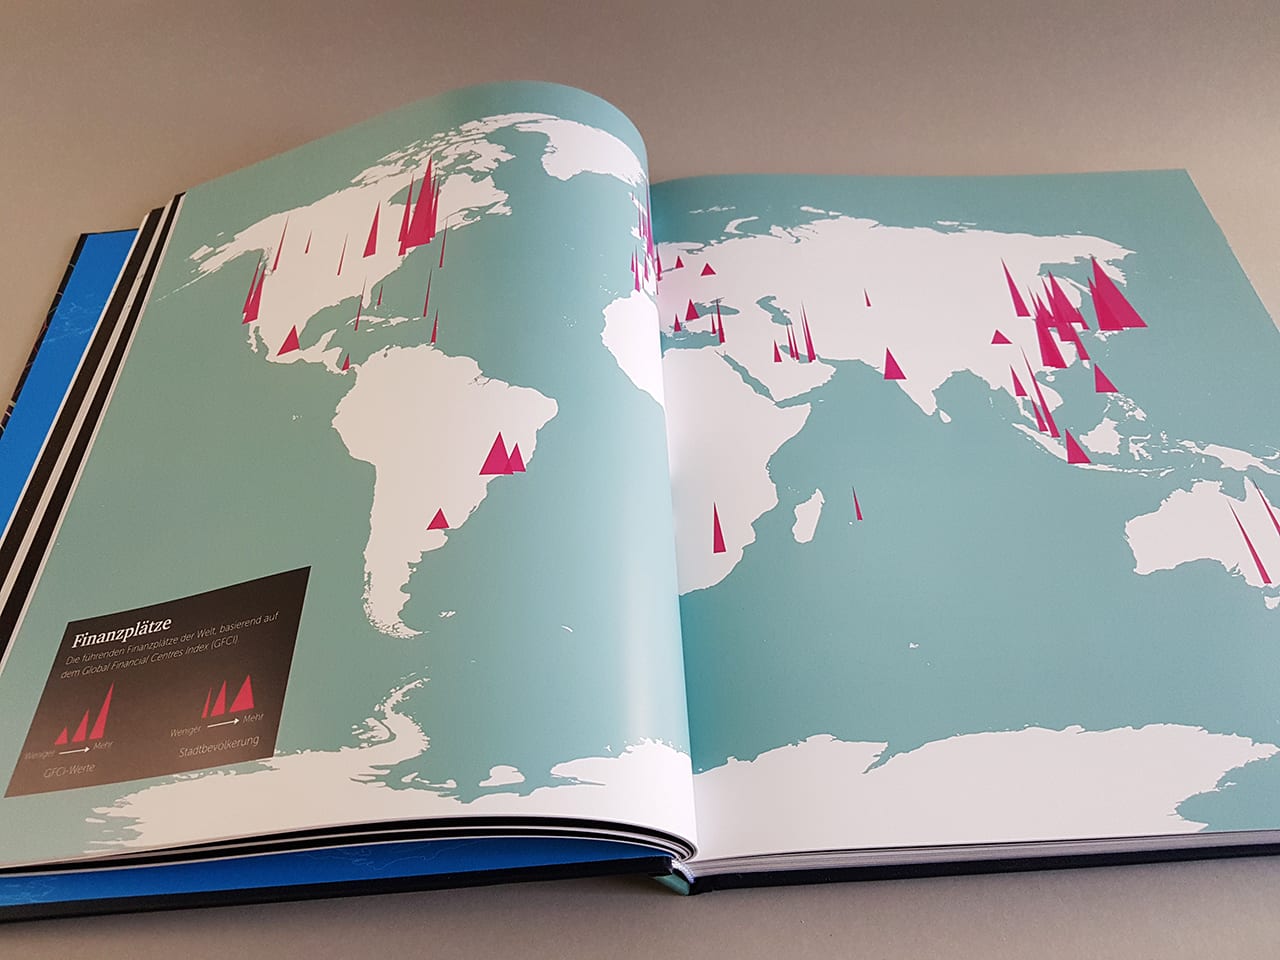 Globalografie 50 Karten erklären die Welt von heute DuMont Verlag Doppelseite Innenansicht